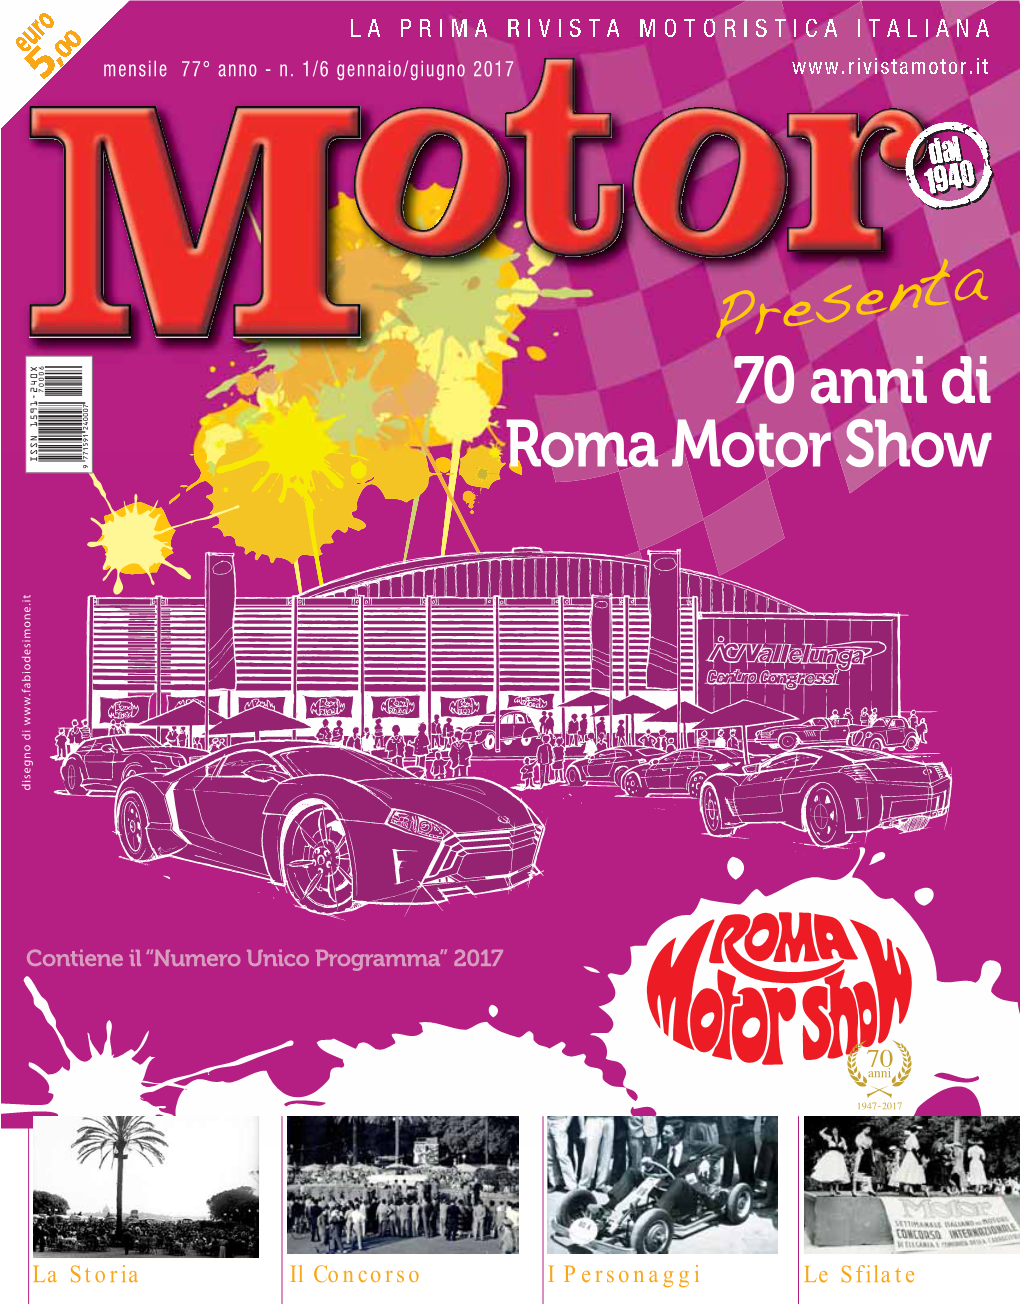 Presenta 70 Anni Di Roma Motor Show